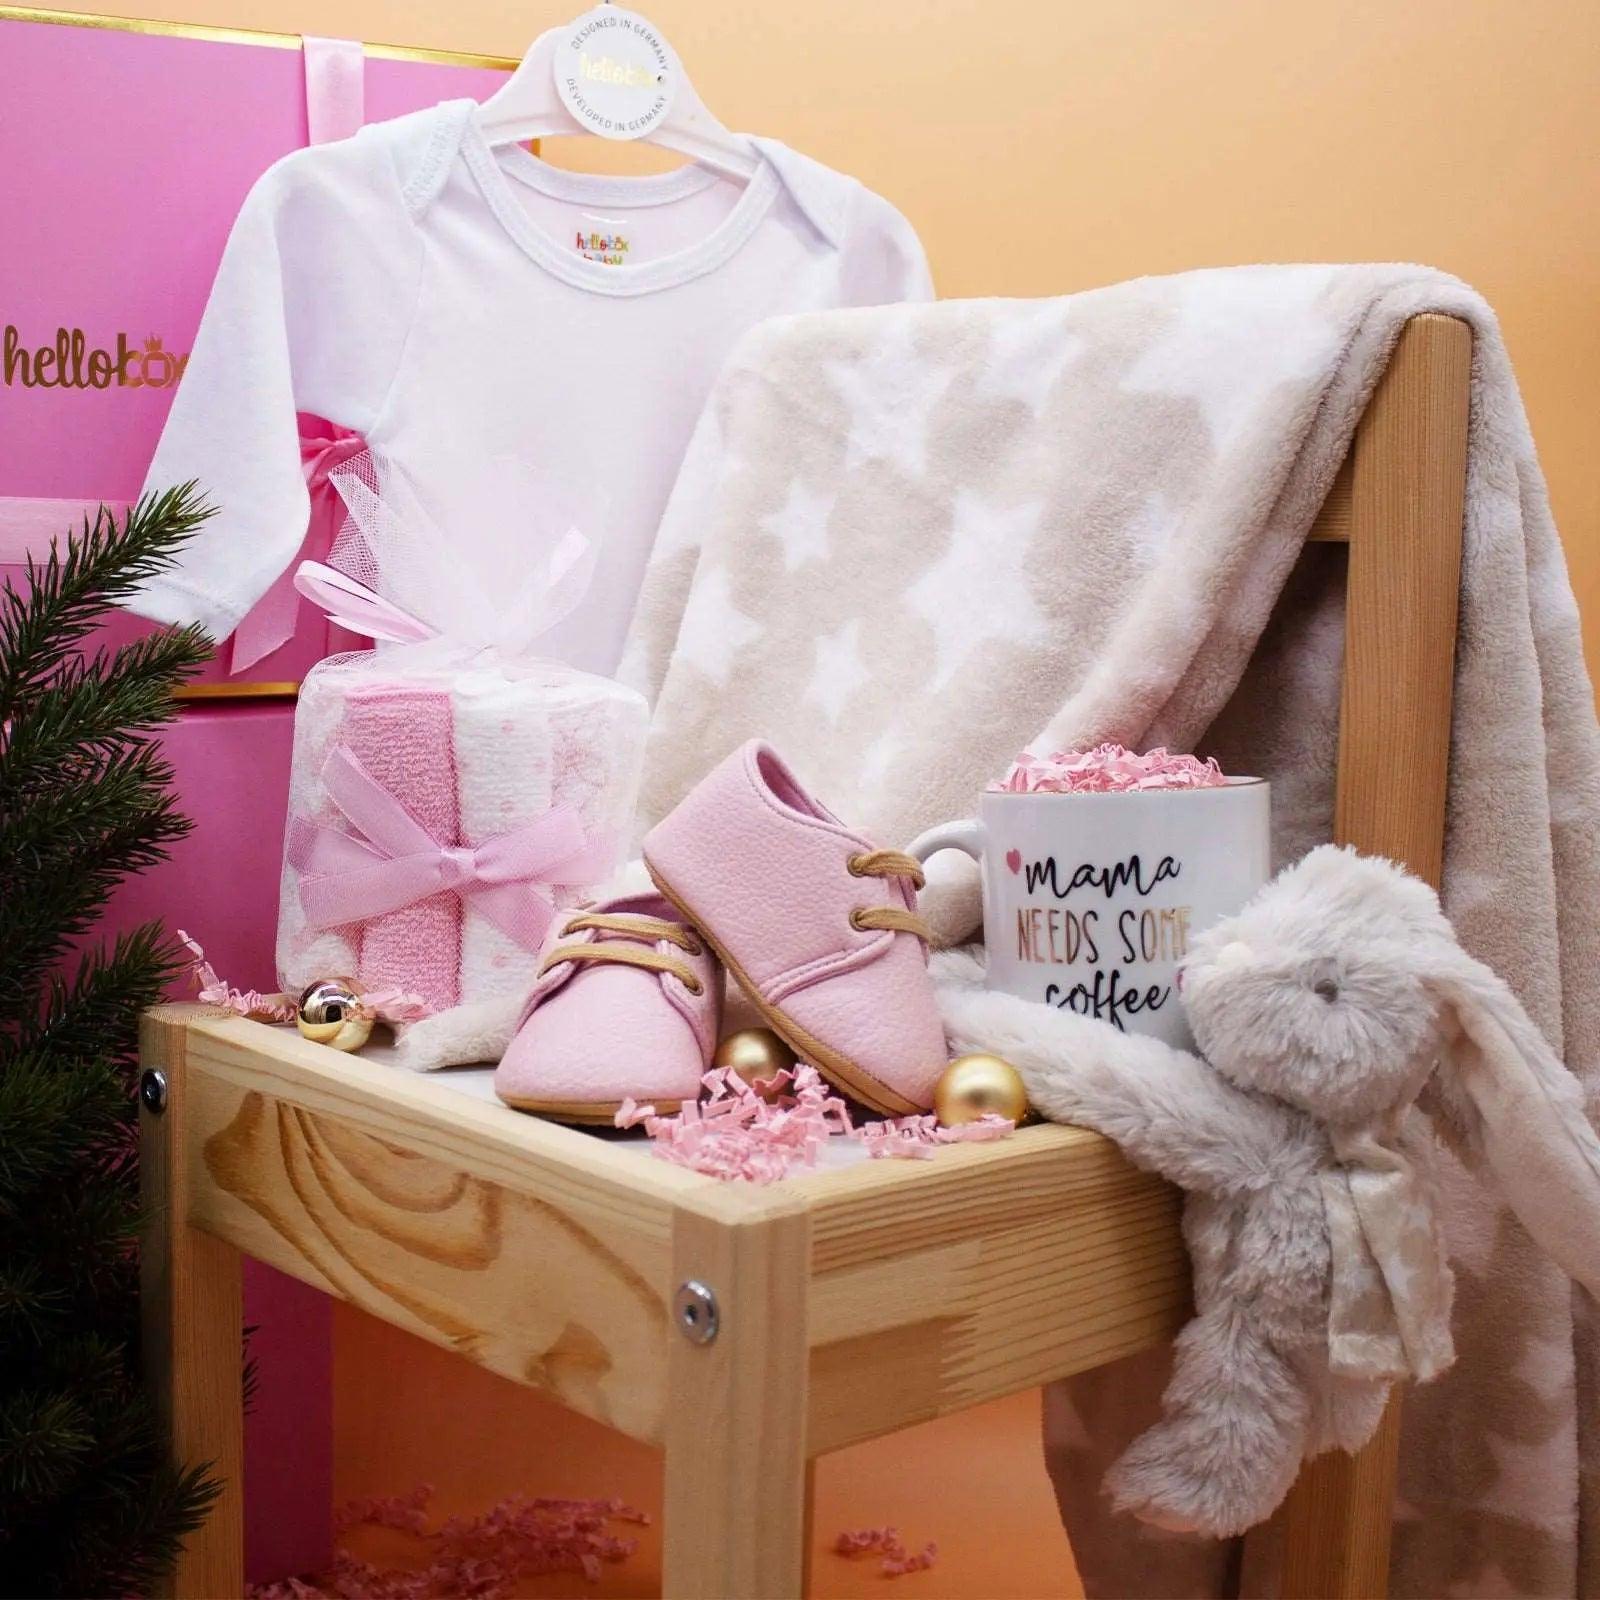 Hellobox Geschenk neugeborenes mit Babydecke, Kuscheltier (17 Teile) (Rosa) Mädchen helloboxshop